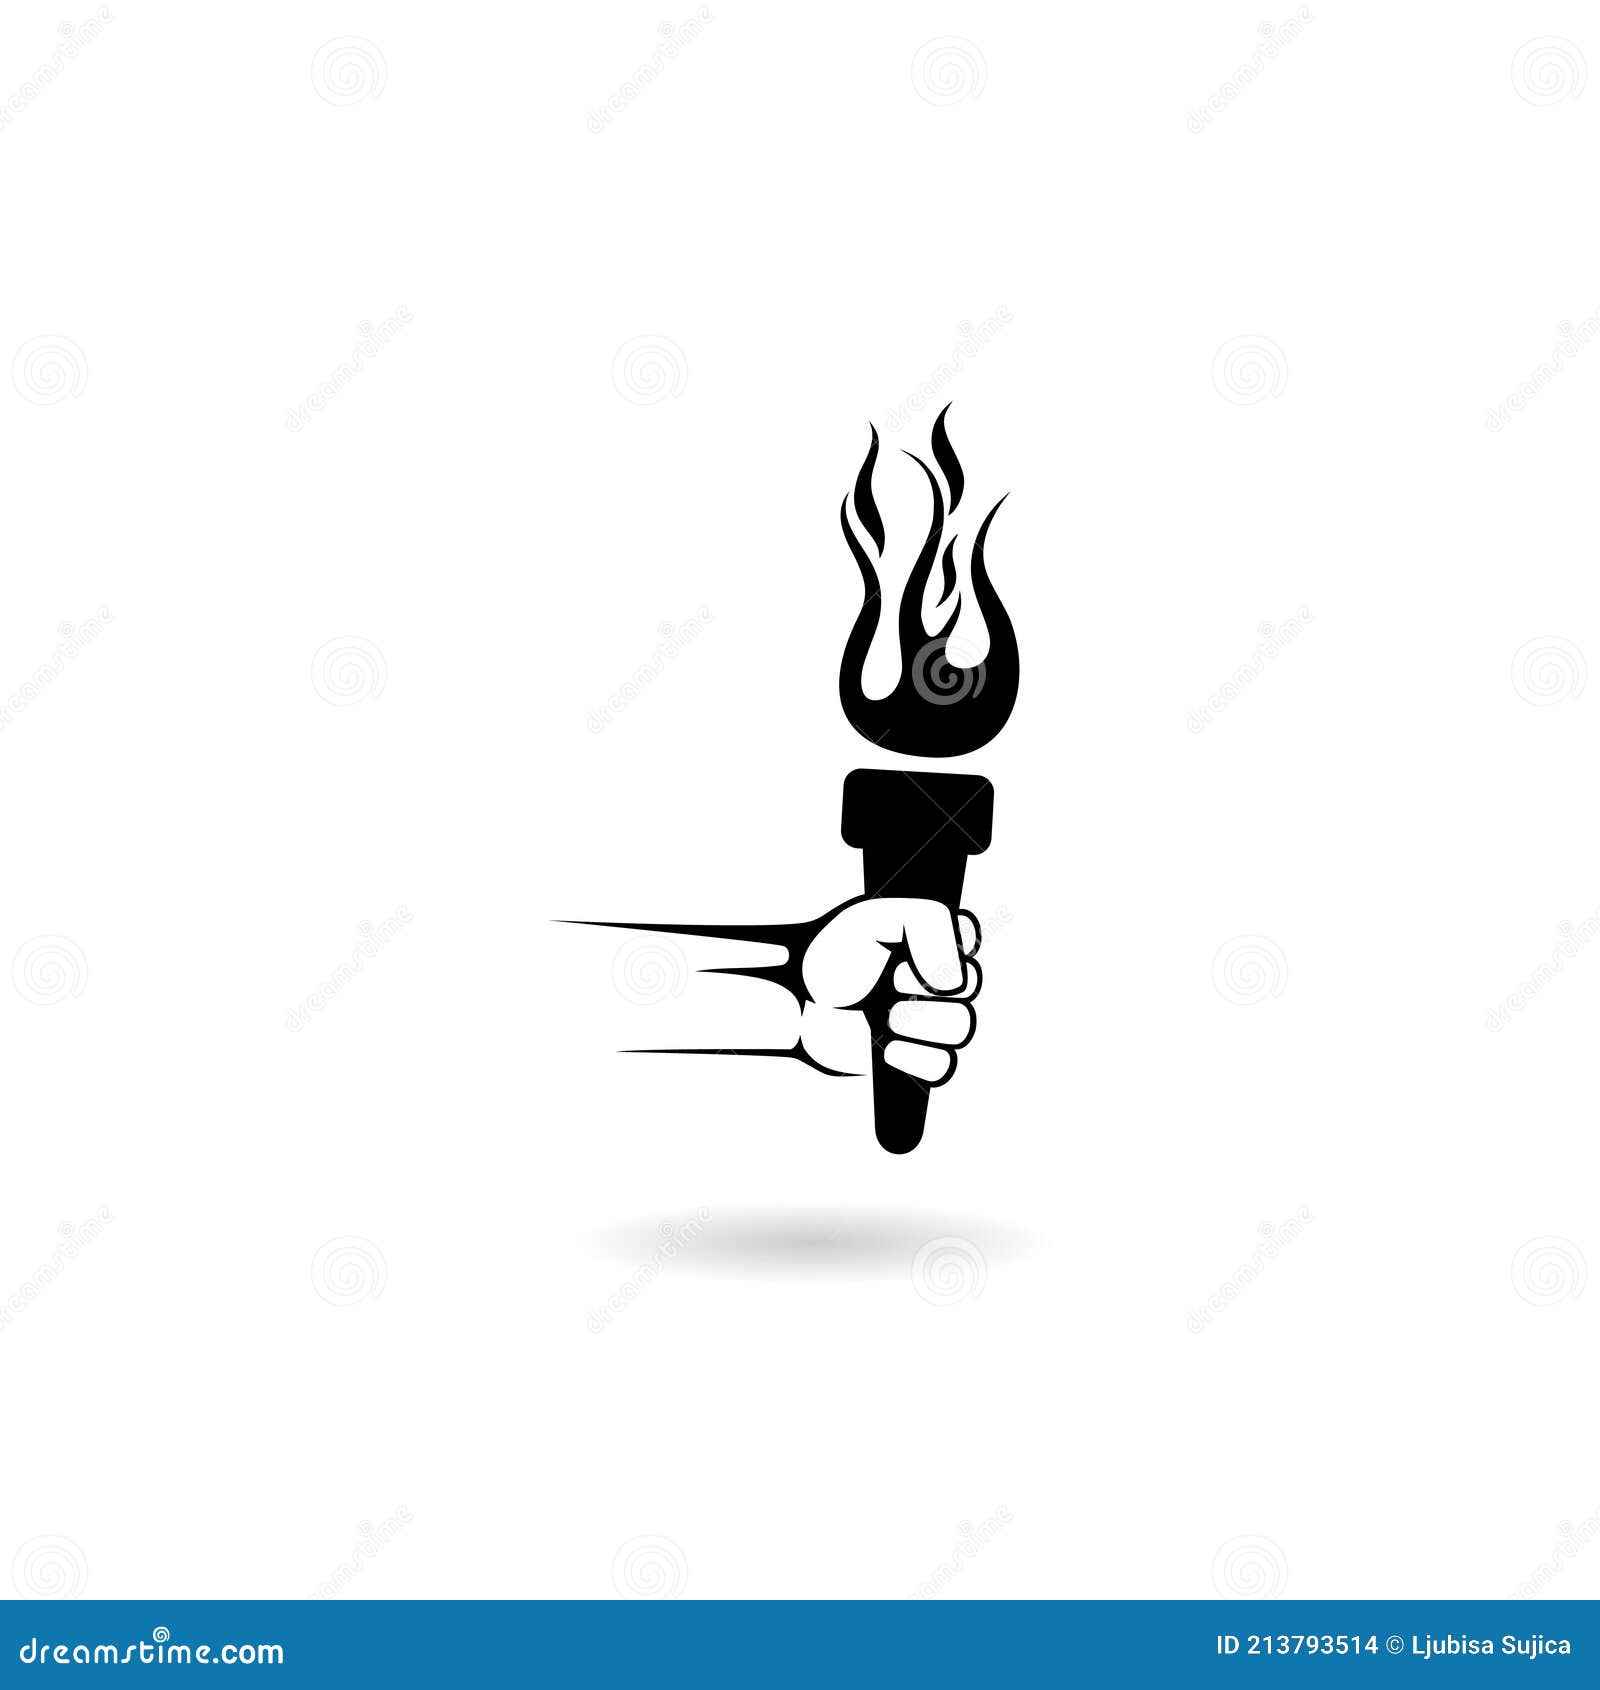 Share 70+ mashal logo super hot - ceg.edu.vn